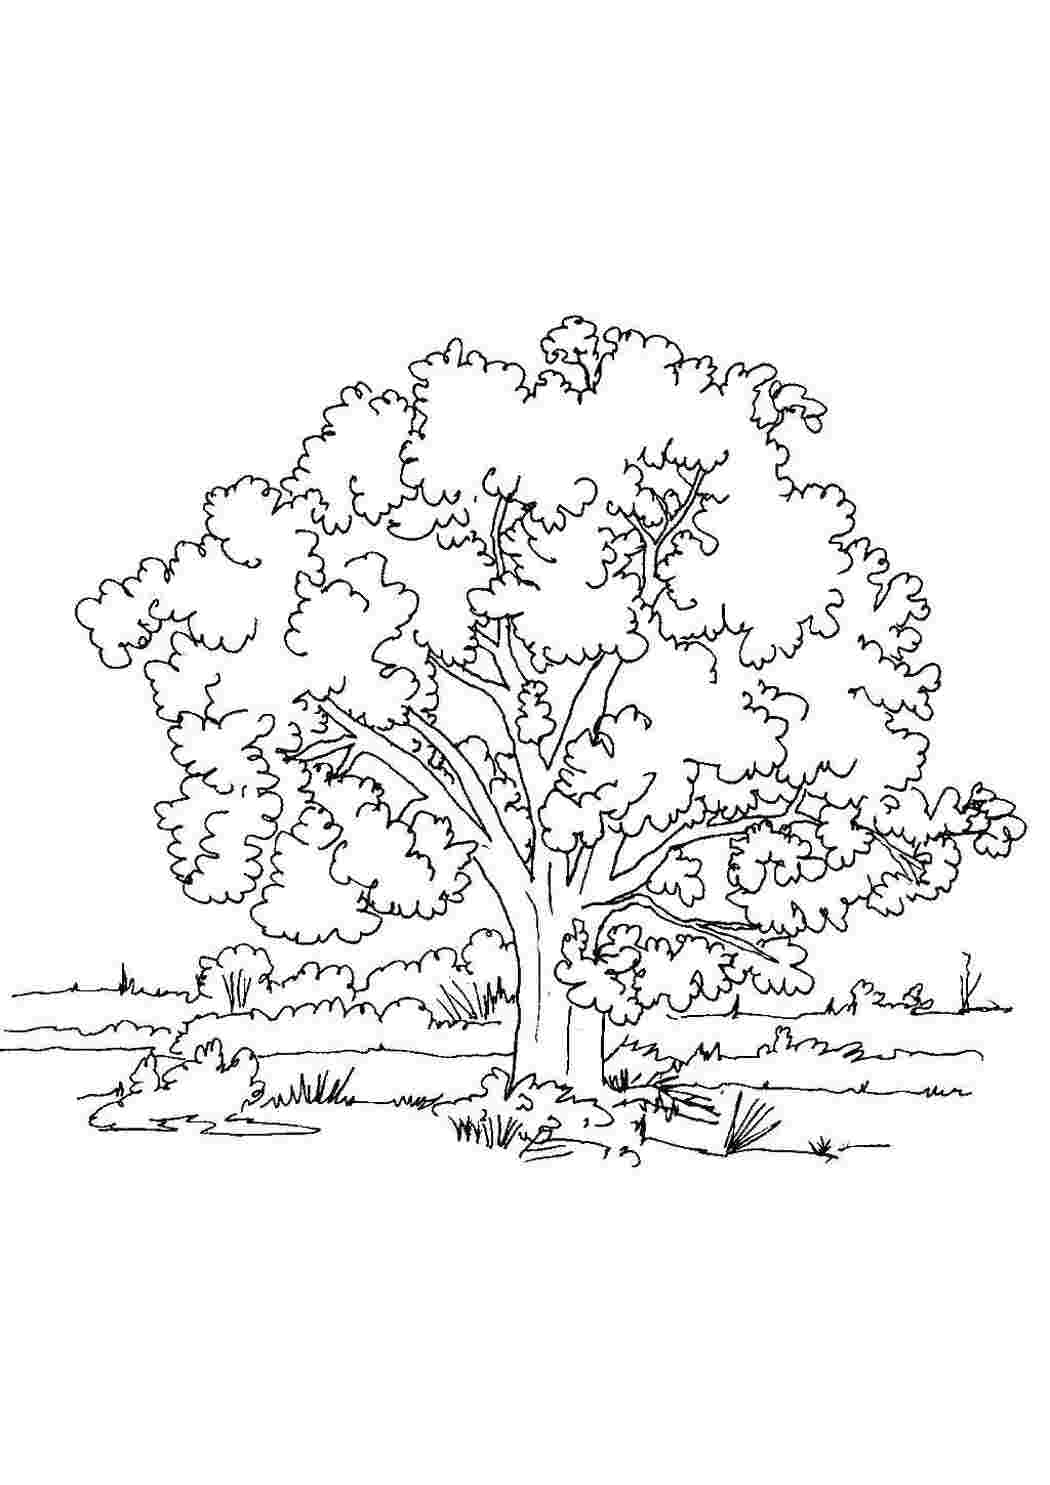 Изображения по запросу Дерево баобаб